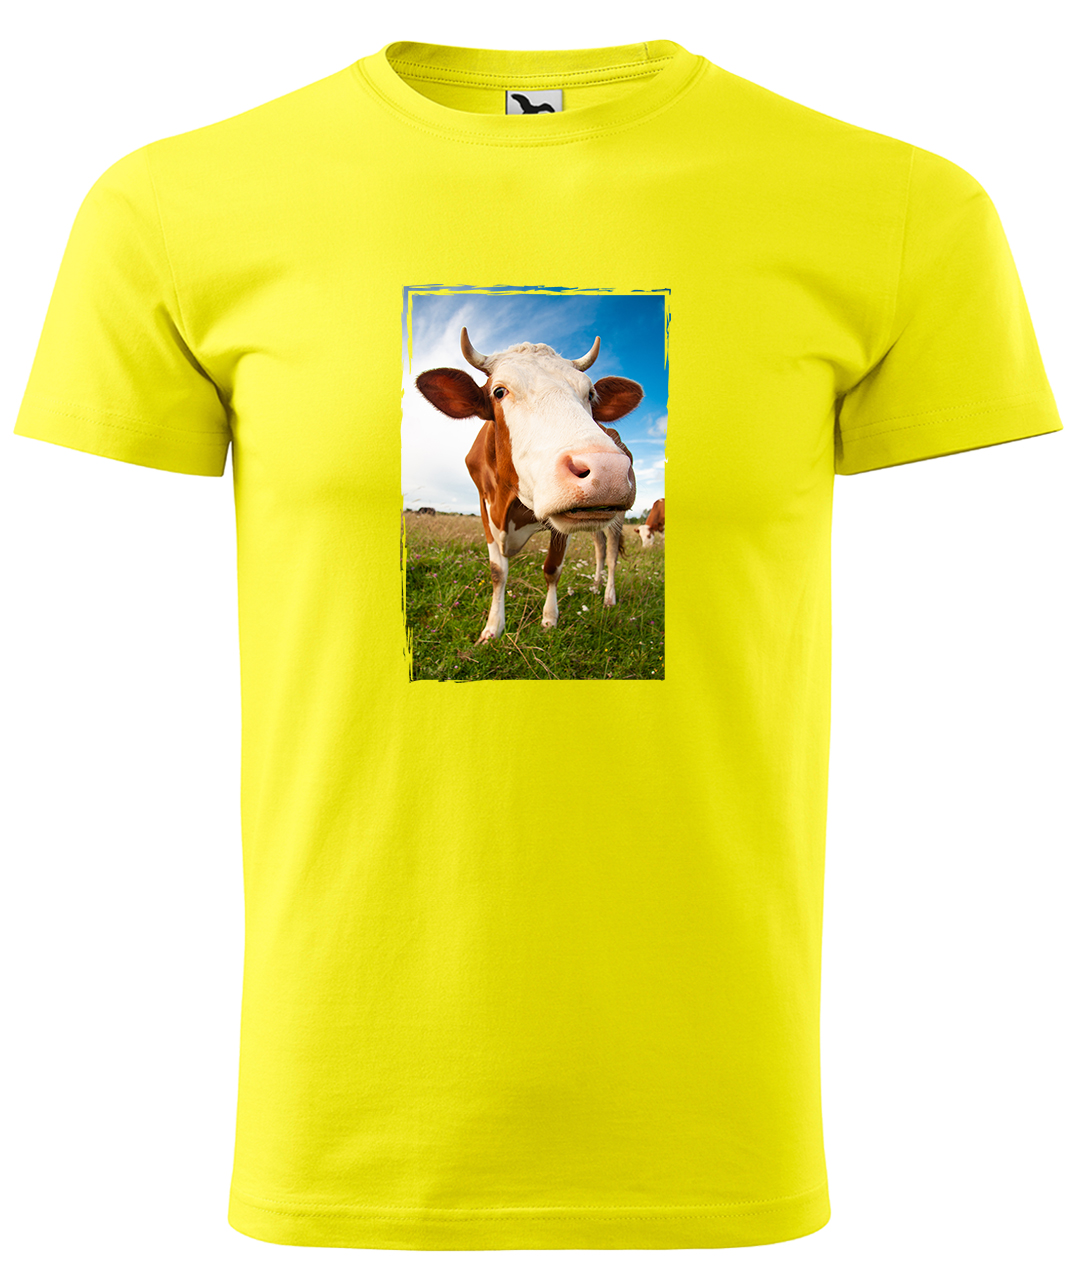 Dětské tričko s krávou - Na pastvě Velikost: 8 let / 134 cm, Barva: Žlutá (04), Délka rukávu: Krátký rukáv